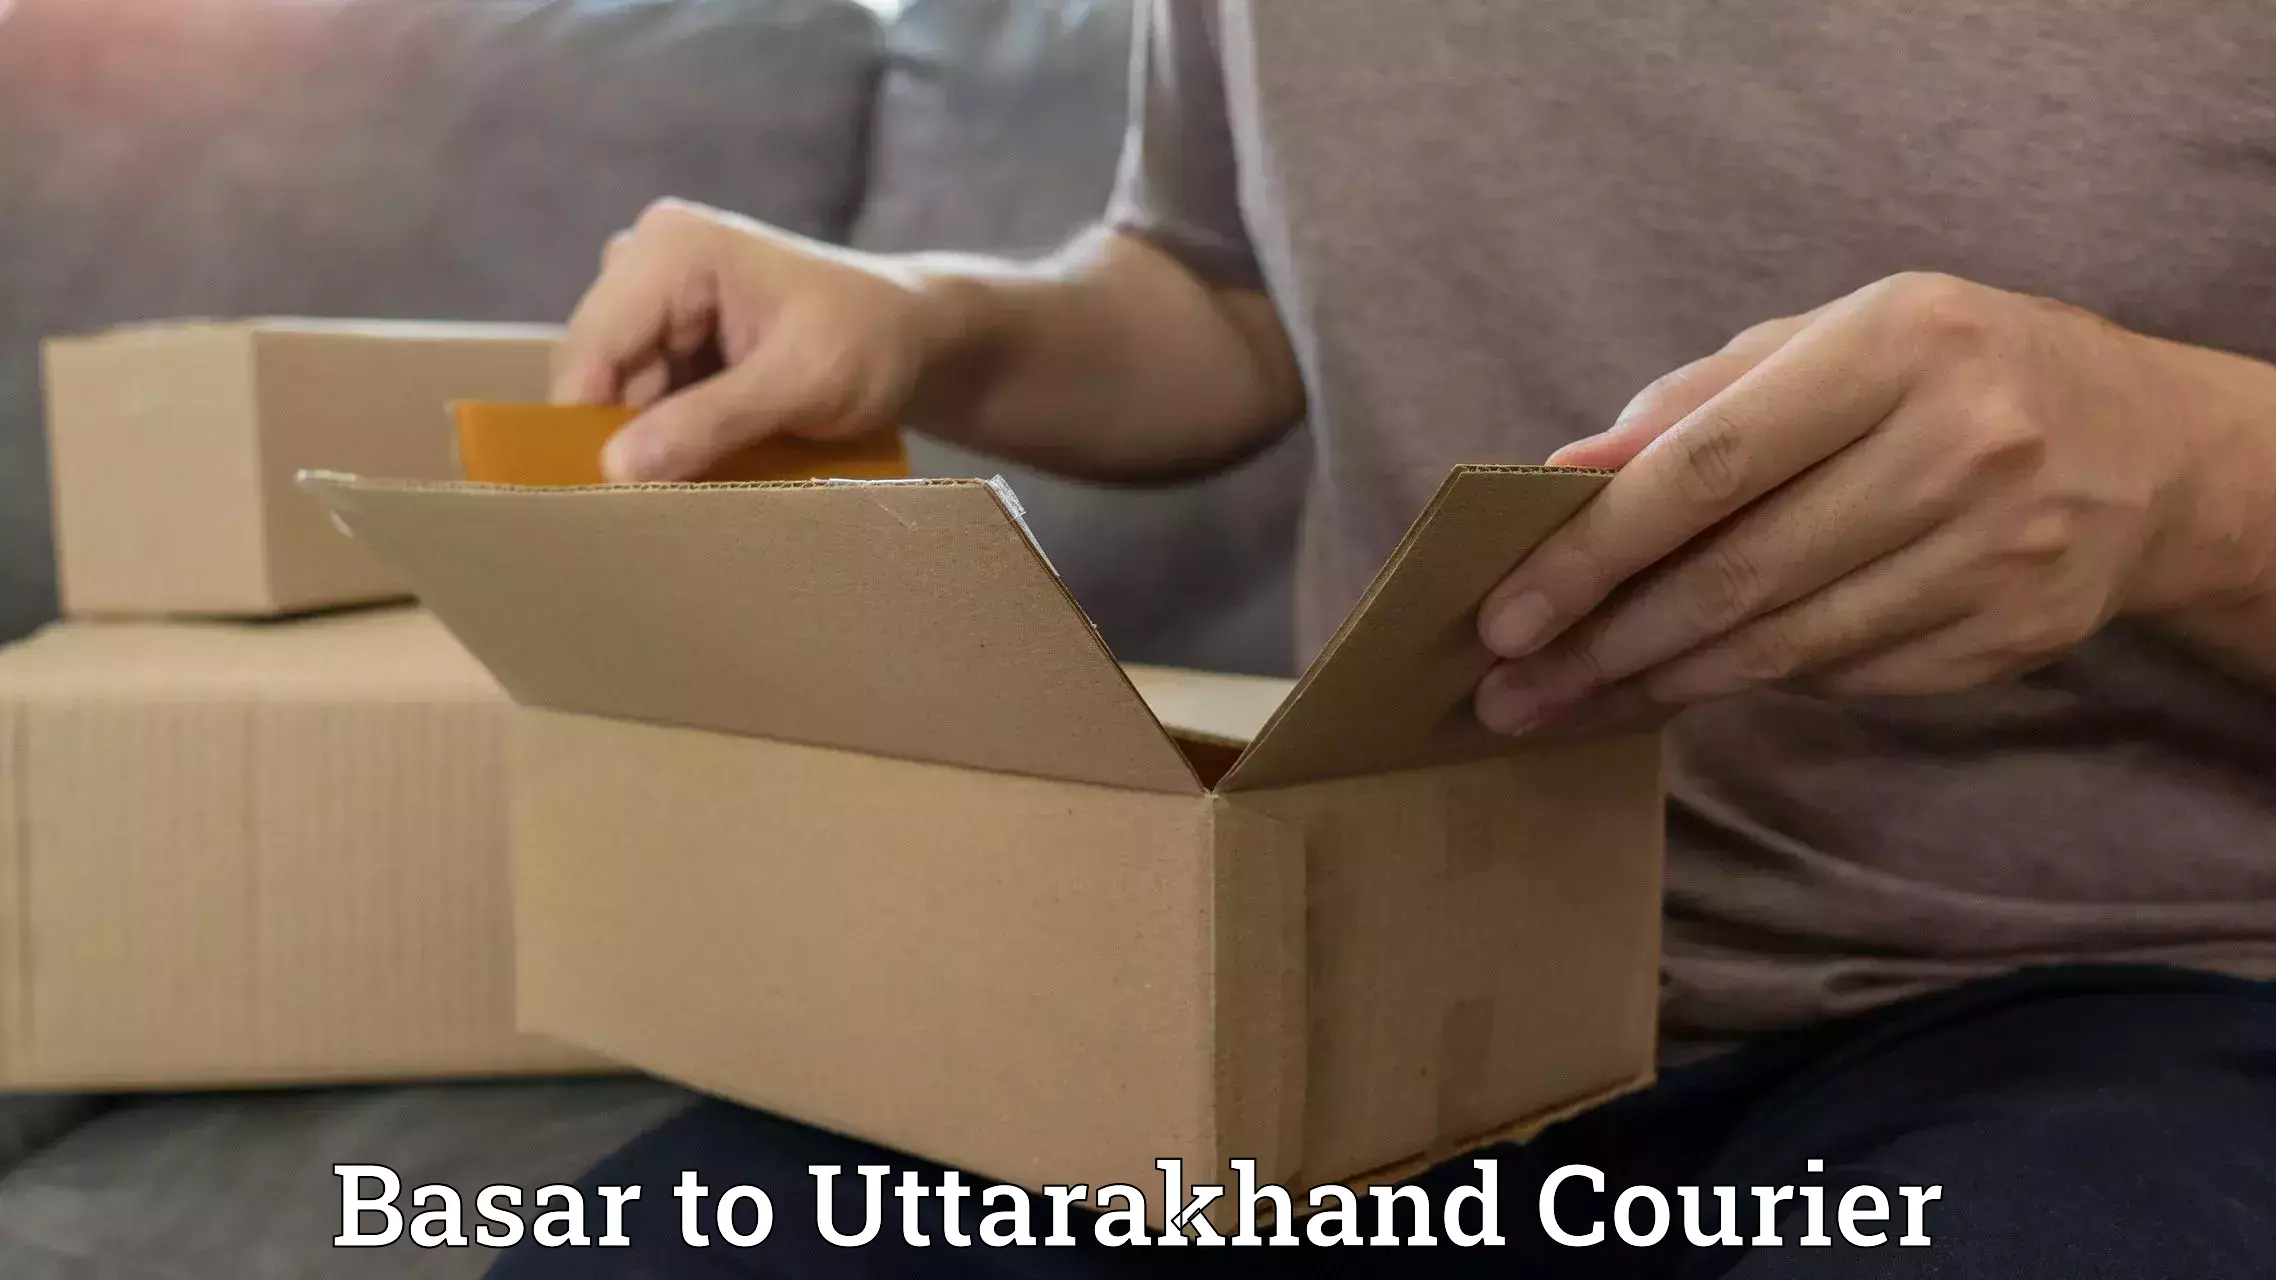 Door-to-door freight service Basar to Uttarakhand